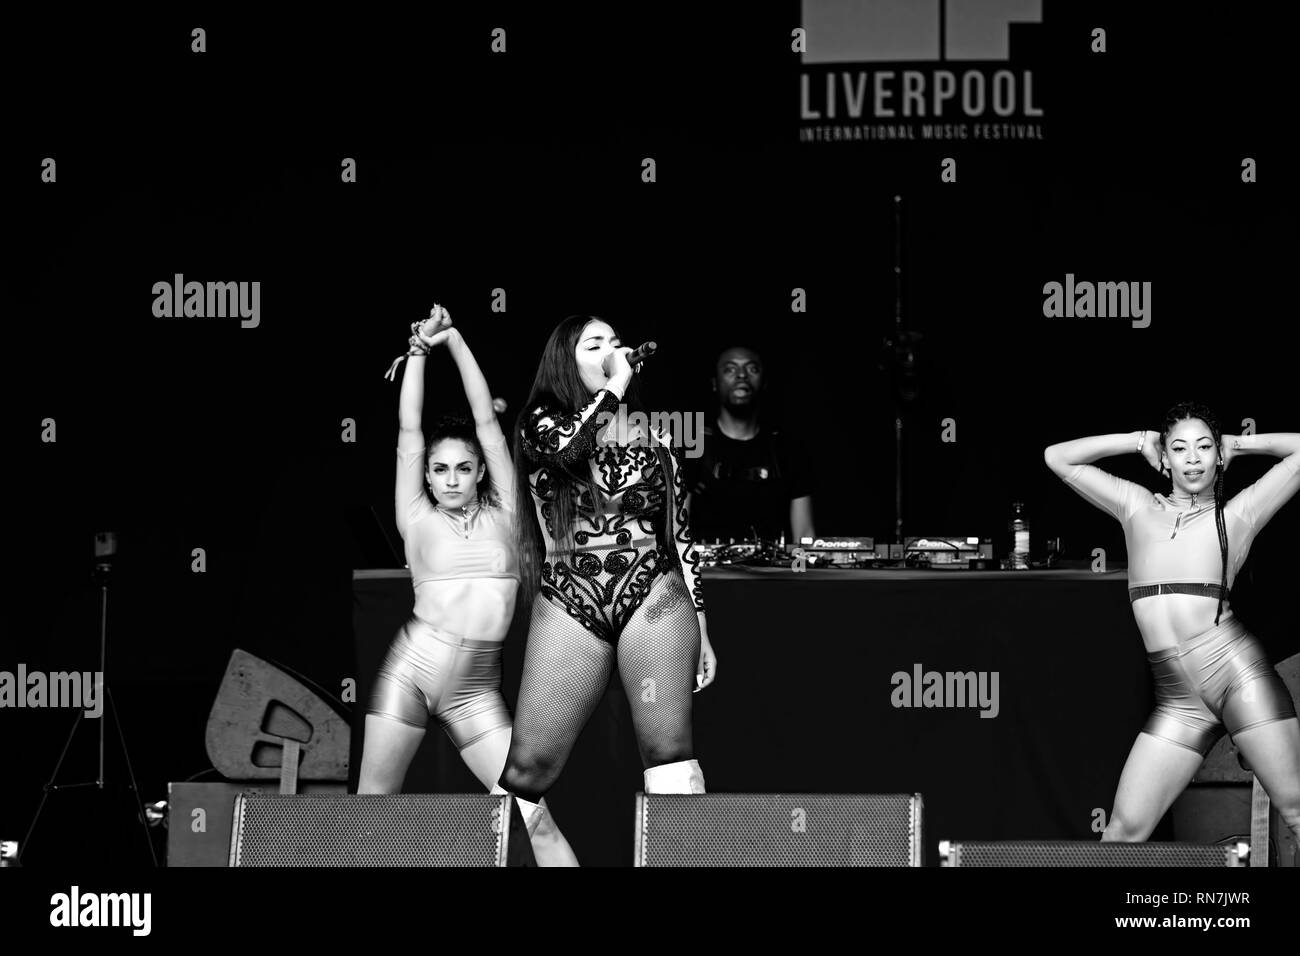 Immagine monocromatica di Stefflon Don performing live sul palco del 2018 Liverpool International Music Festival di Sefton Park Liverpool Regno Unito. Foto Stock